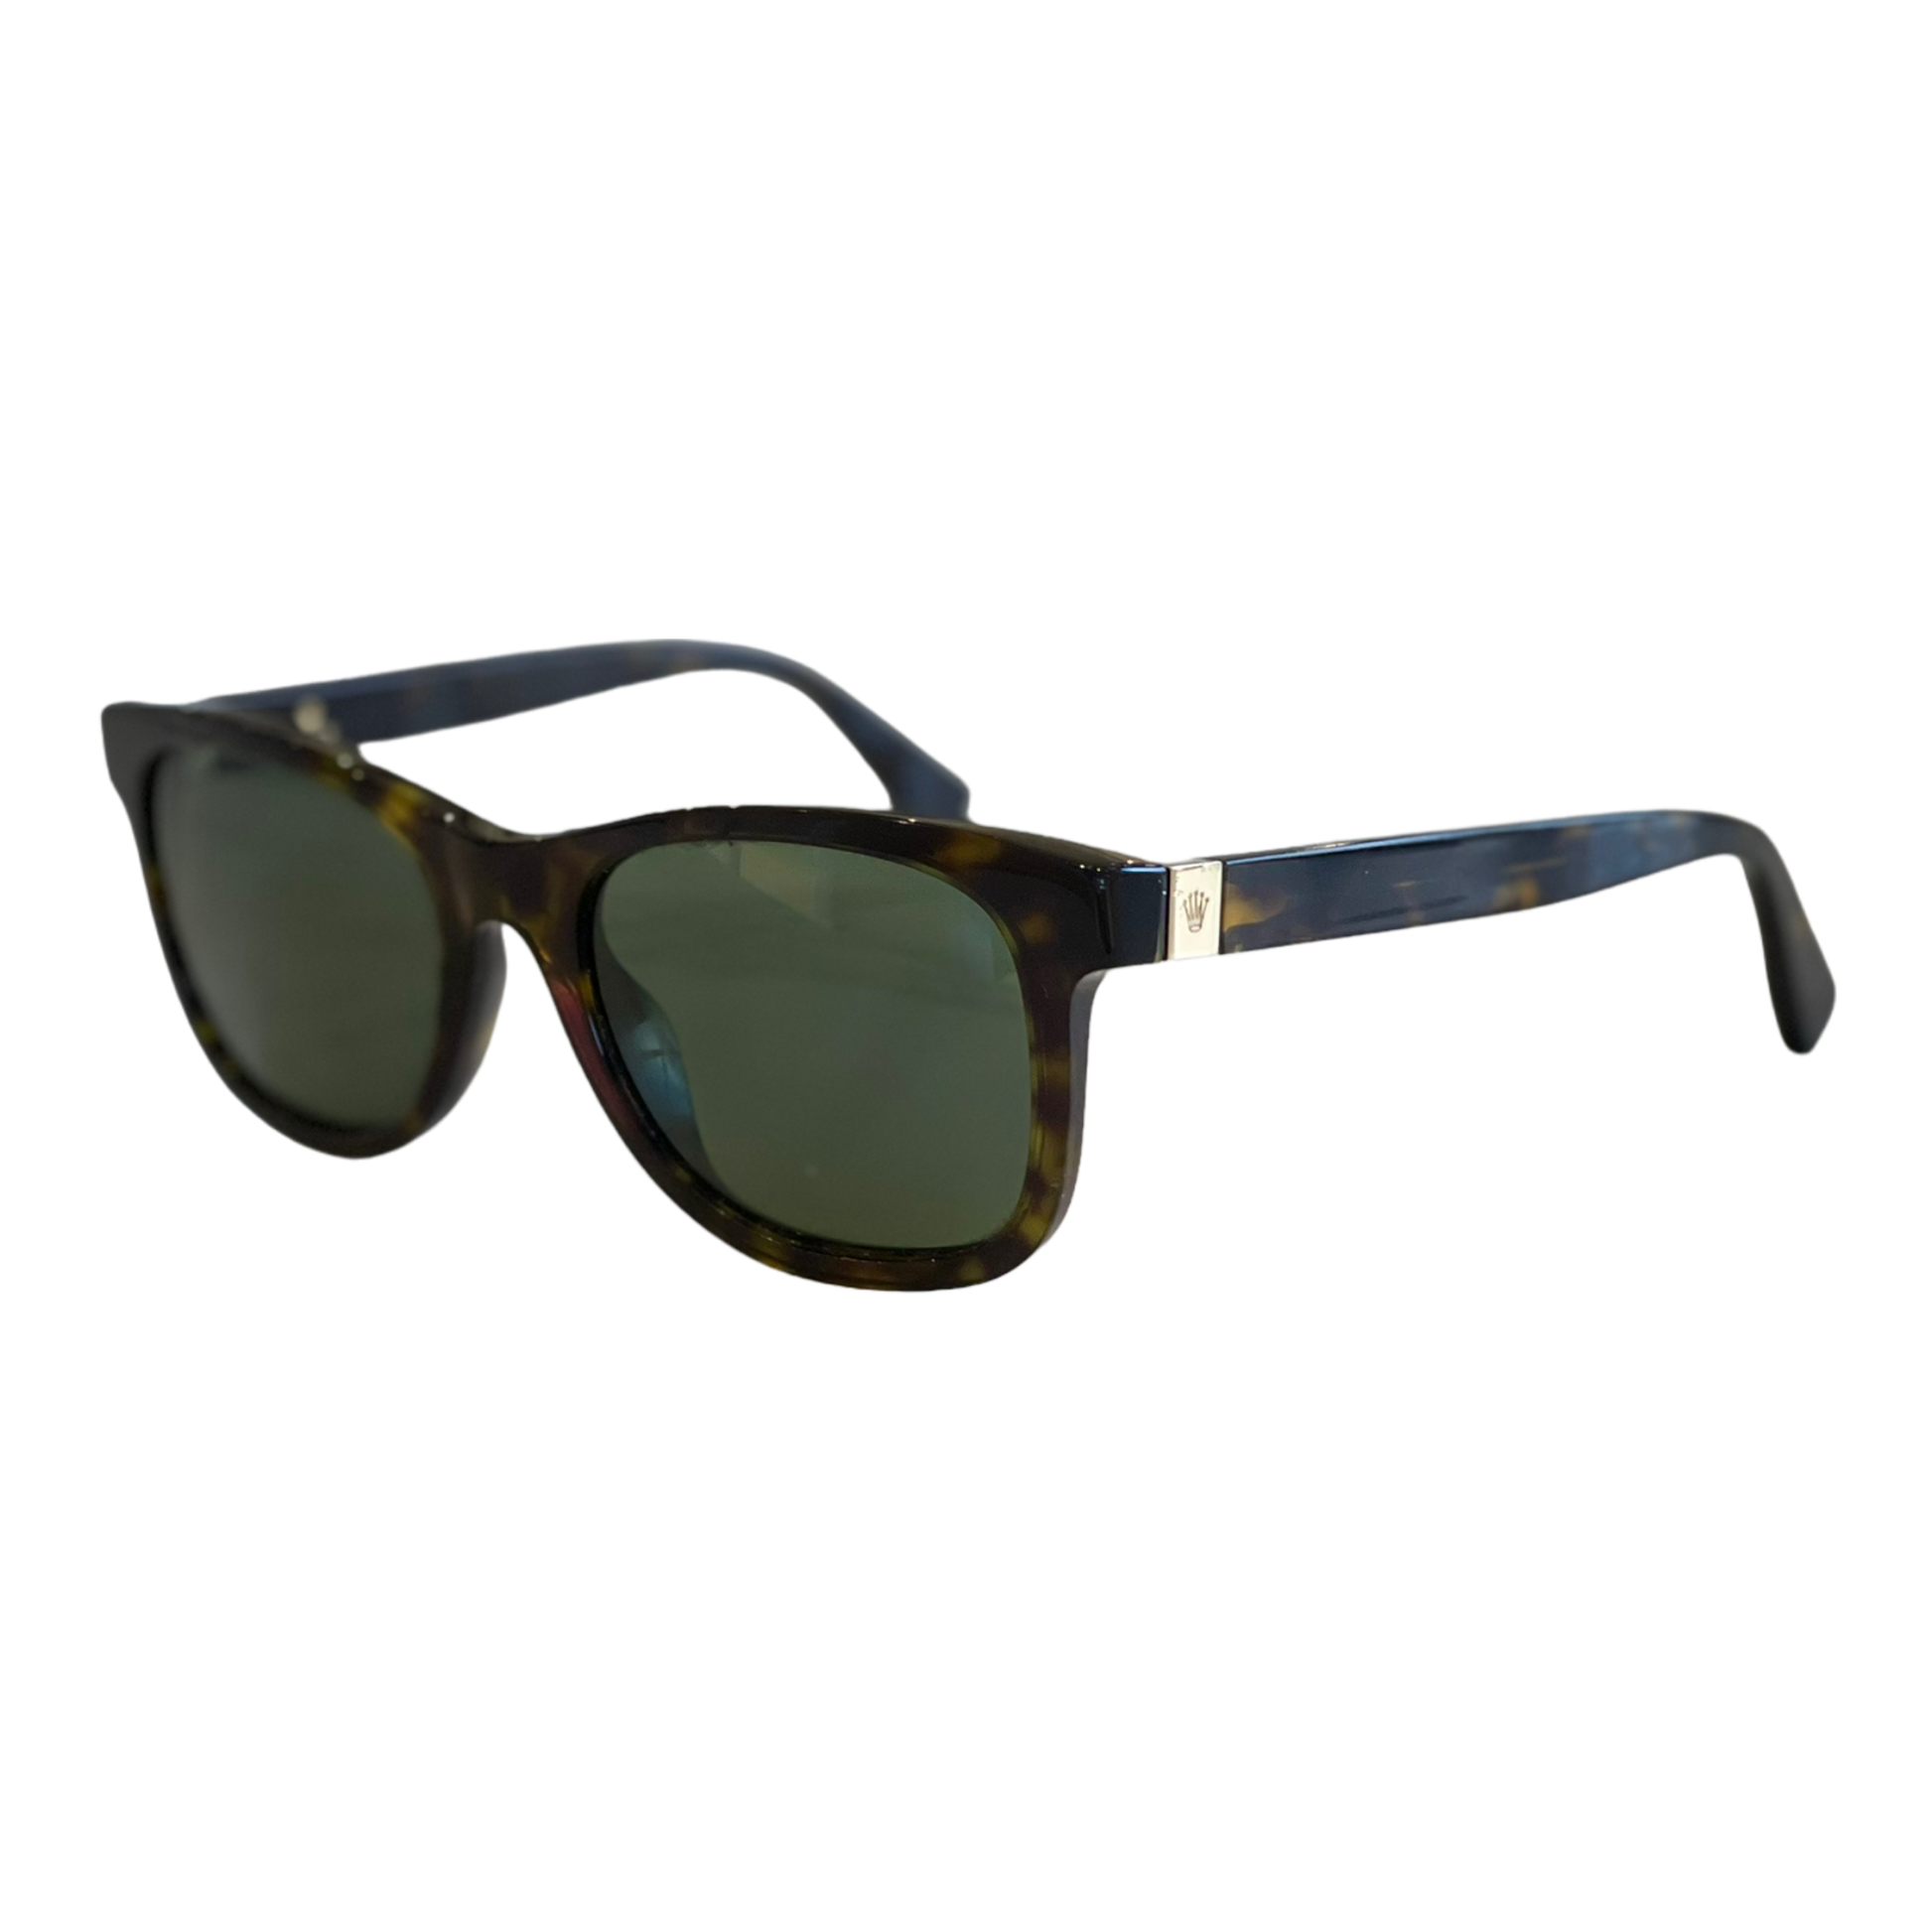 Rolex Designer Sunglasses